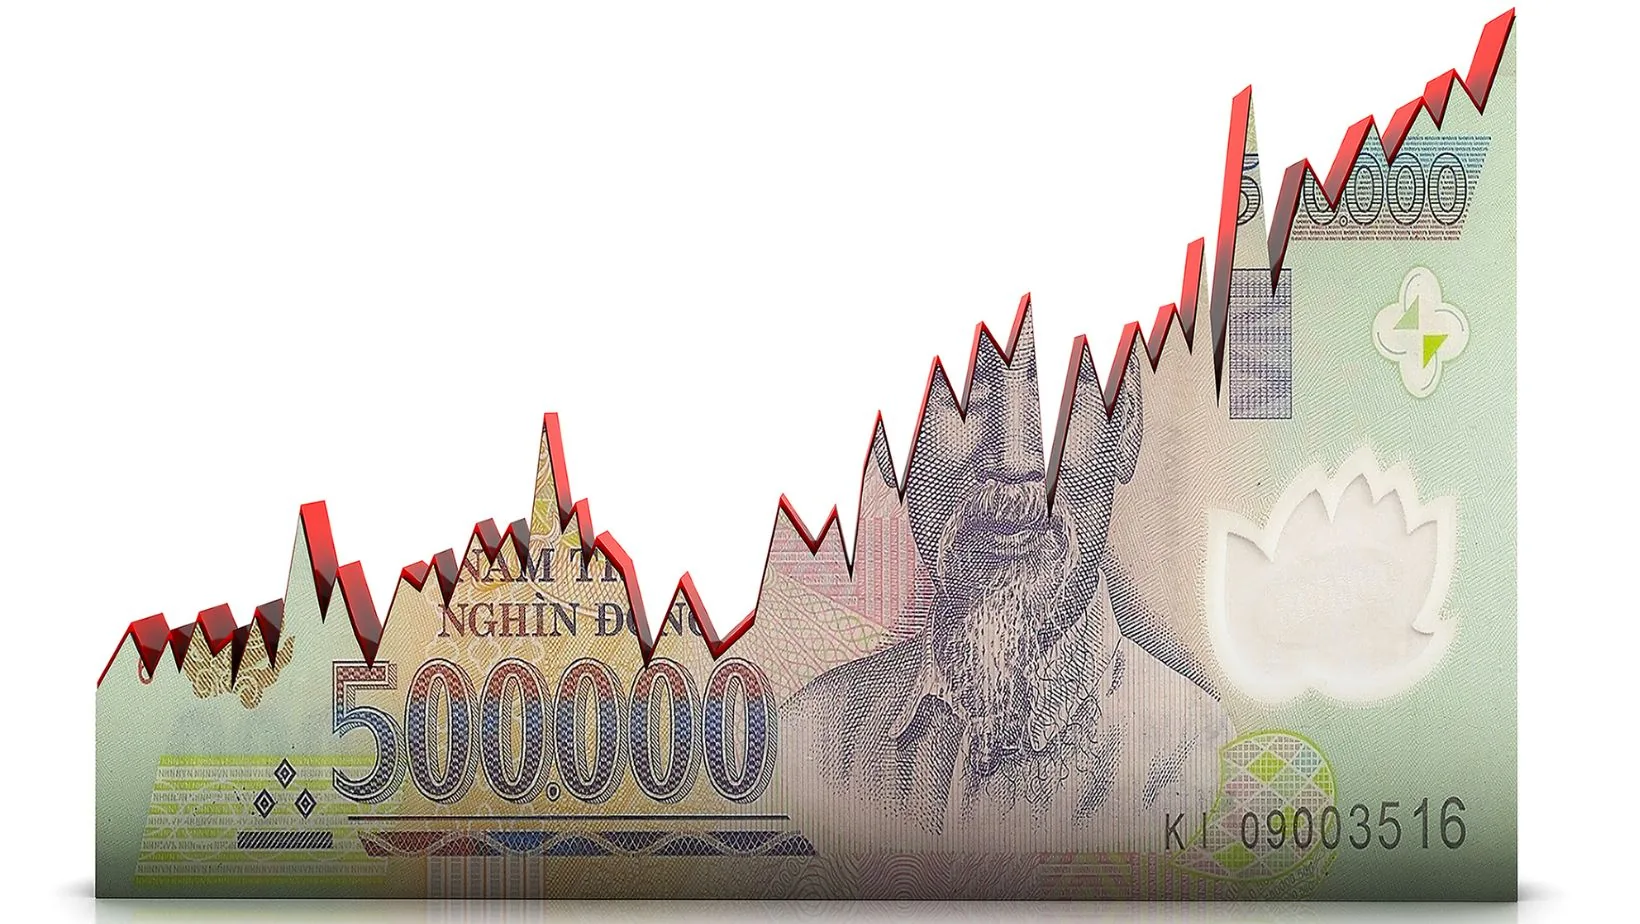 500.000 Vietnamees dollarbiljet als grafiek